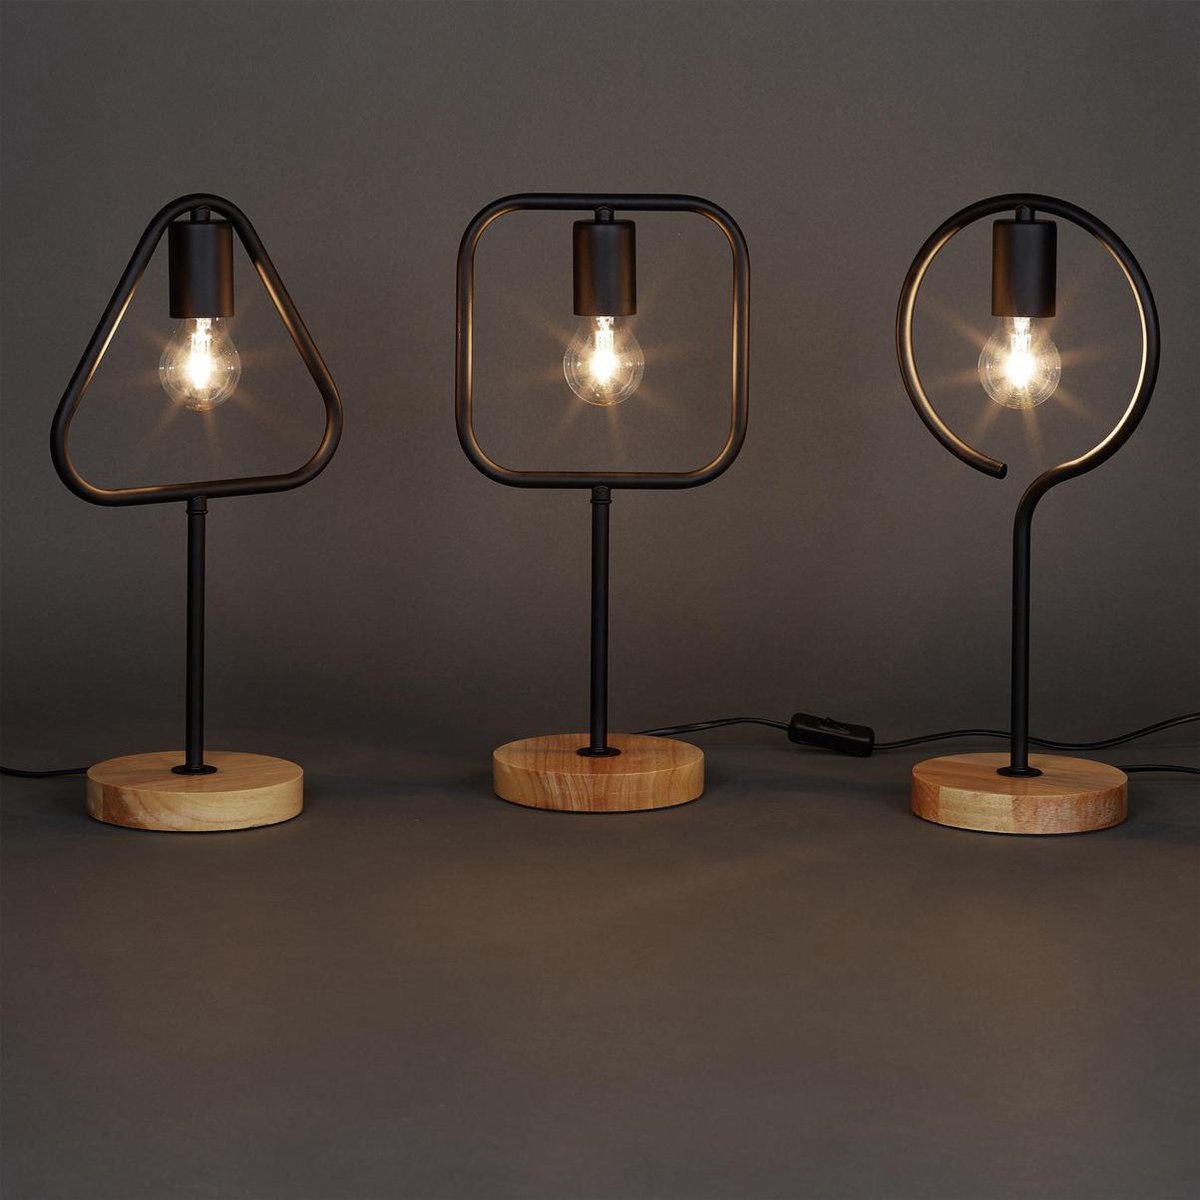 relaxdays - tafellamp zonder lampenkap - leeslamp metaal hout - lamp |